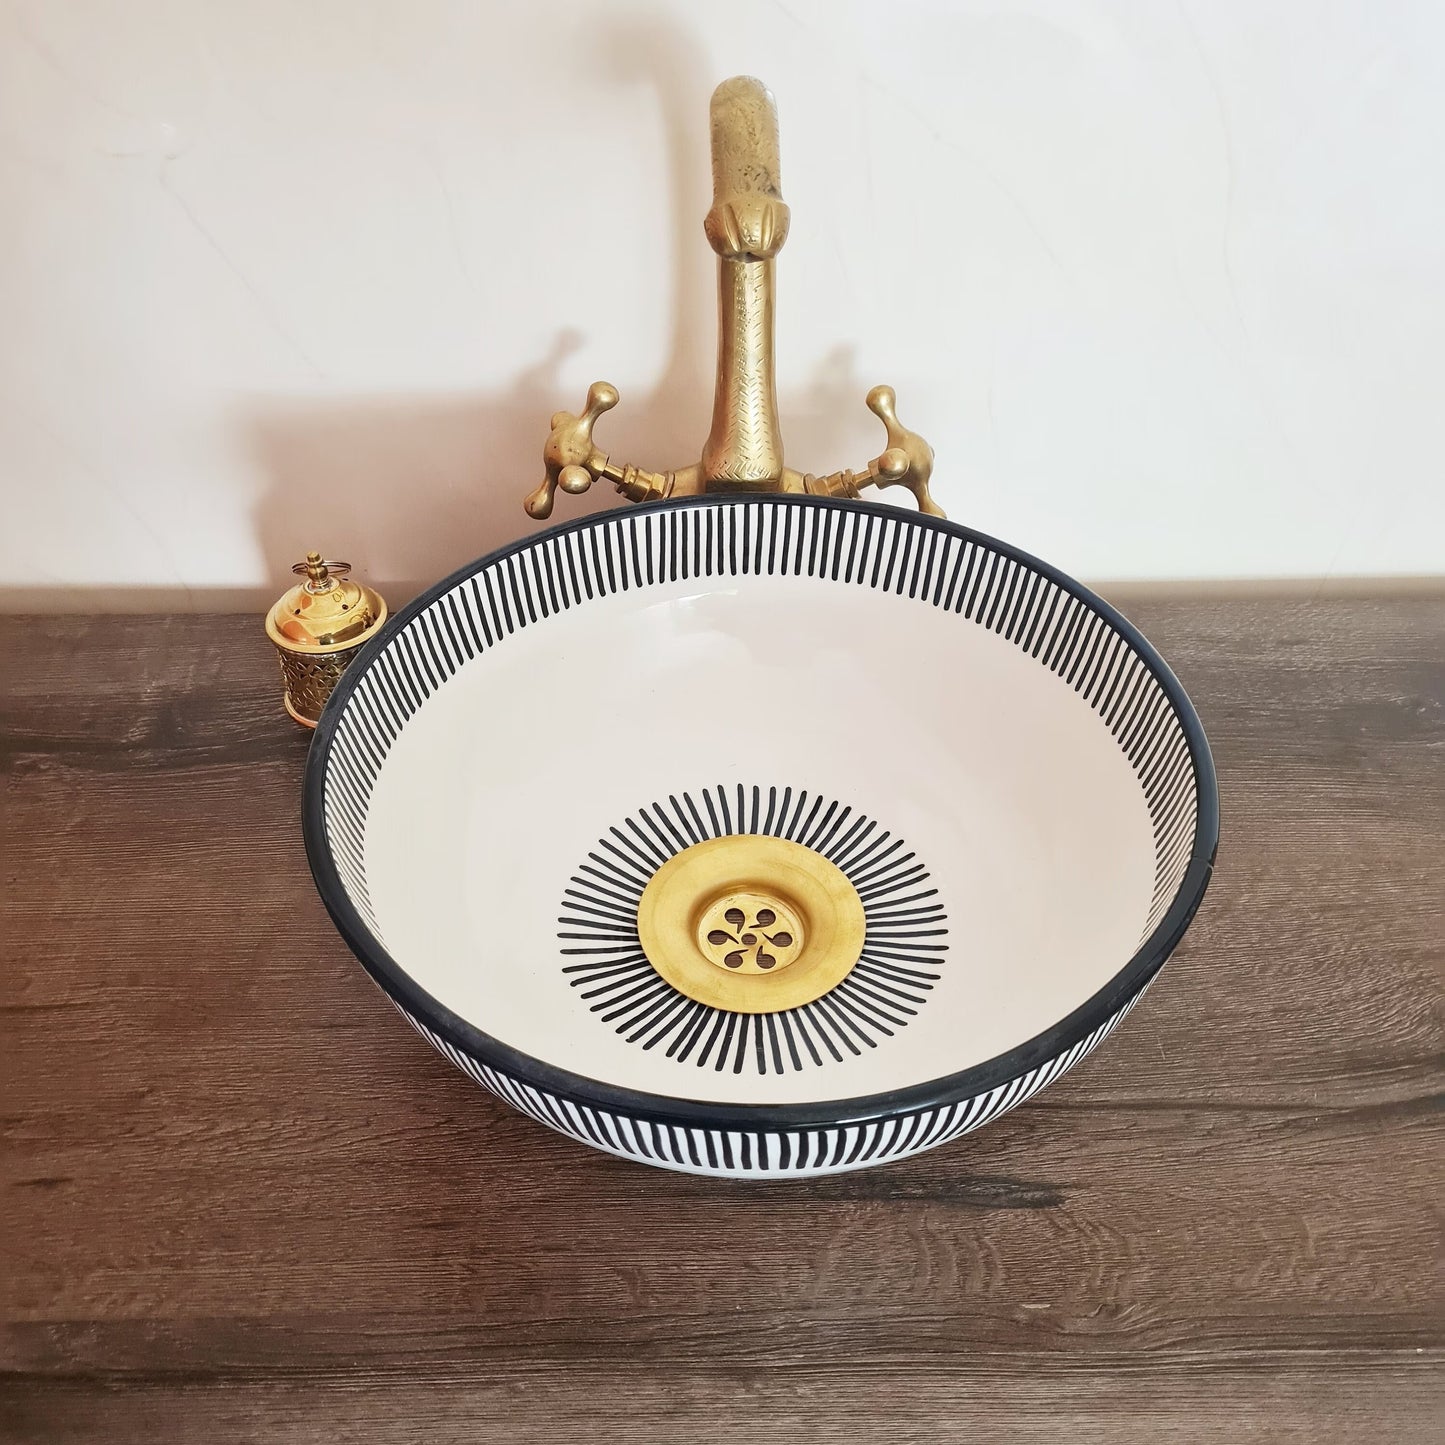 Vasque marocaine pour salle de bain | Lavabo en céramique style zellige de salle de bain  | Black and white sink bowl  #38